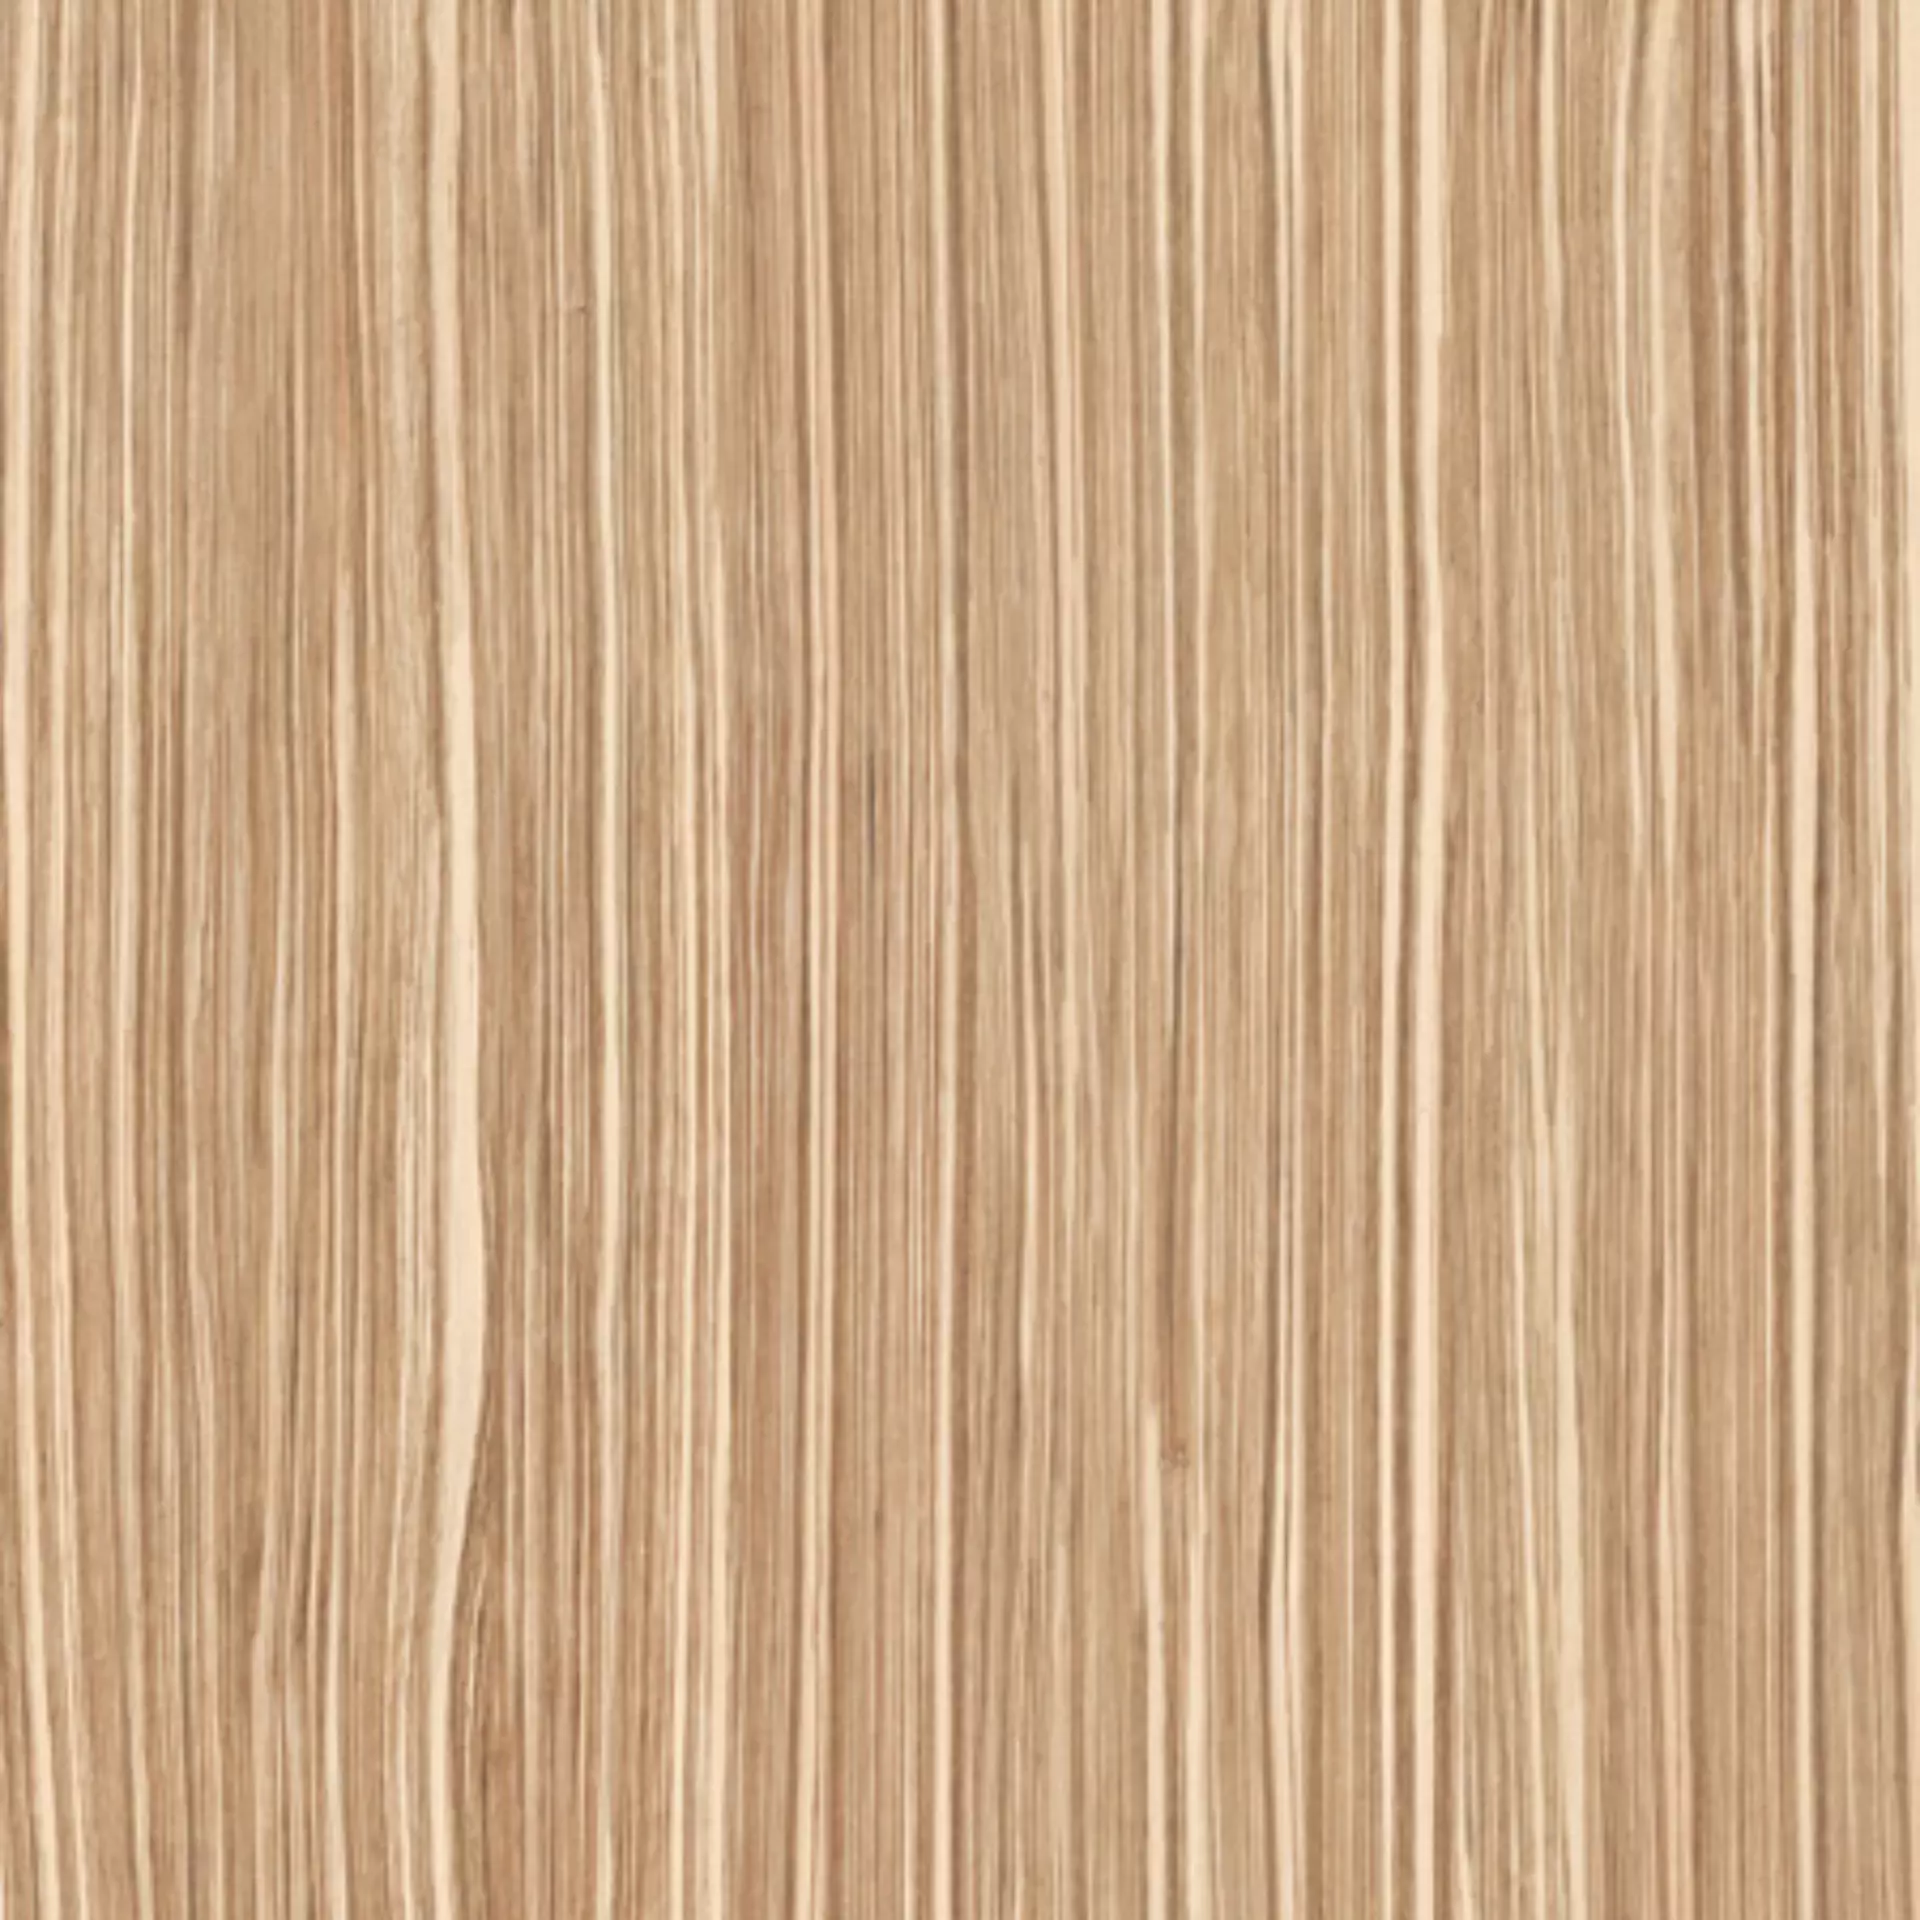 Casalgrande Geowood Zebrawood Naturale – Matt 10630072 22,5x180cm rectified 10mm